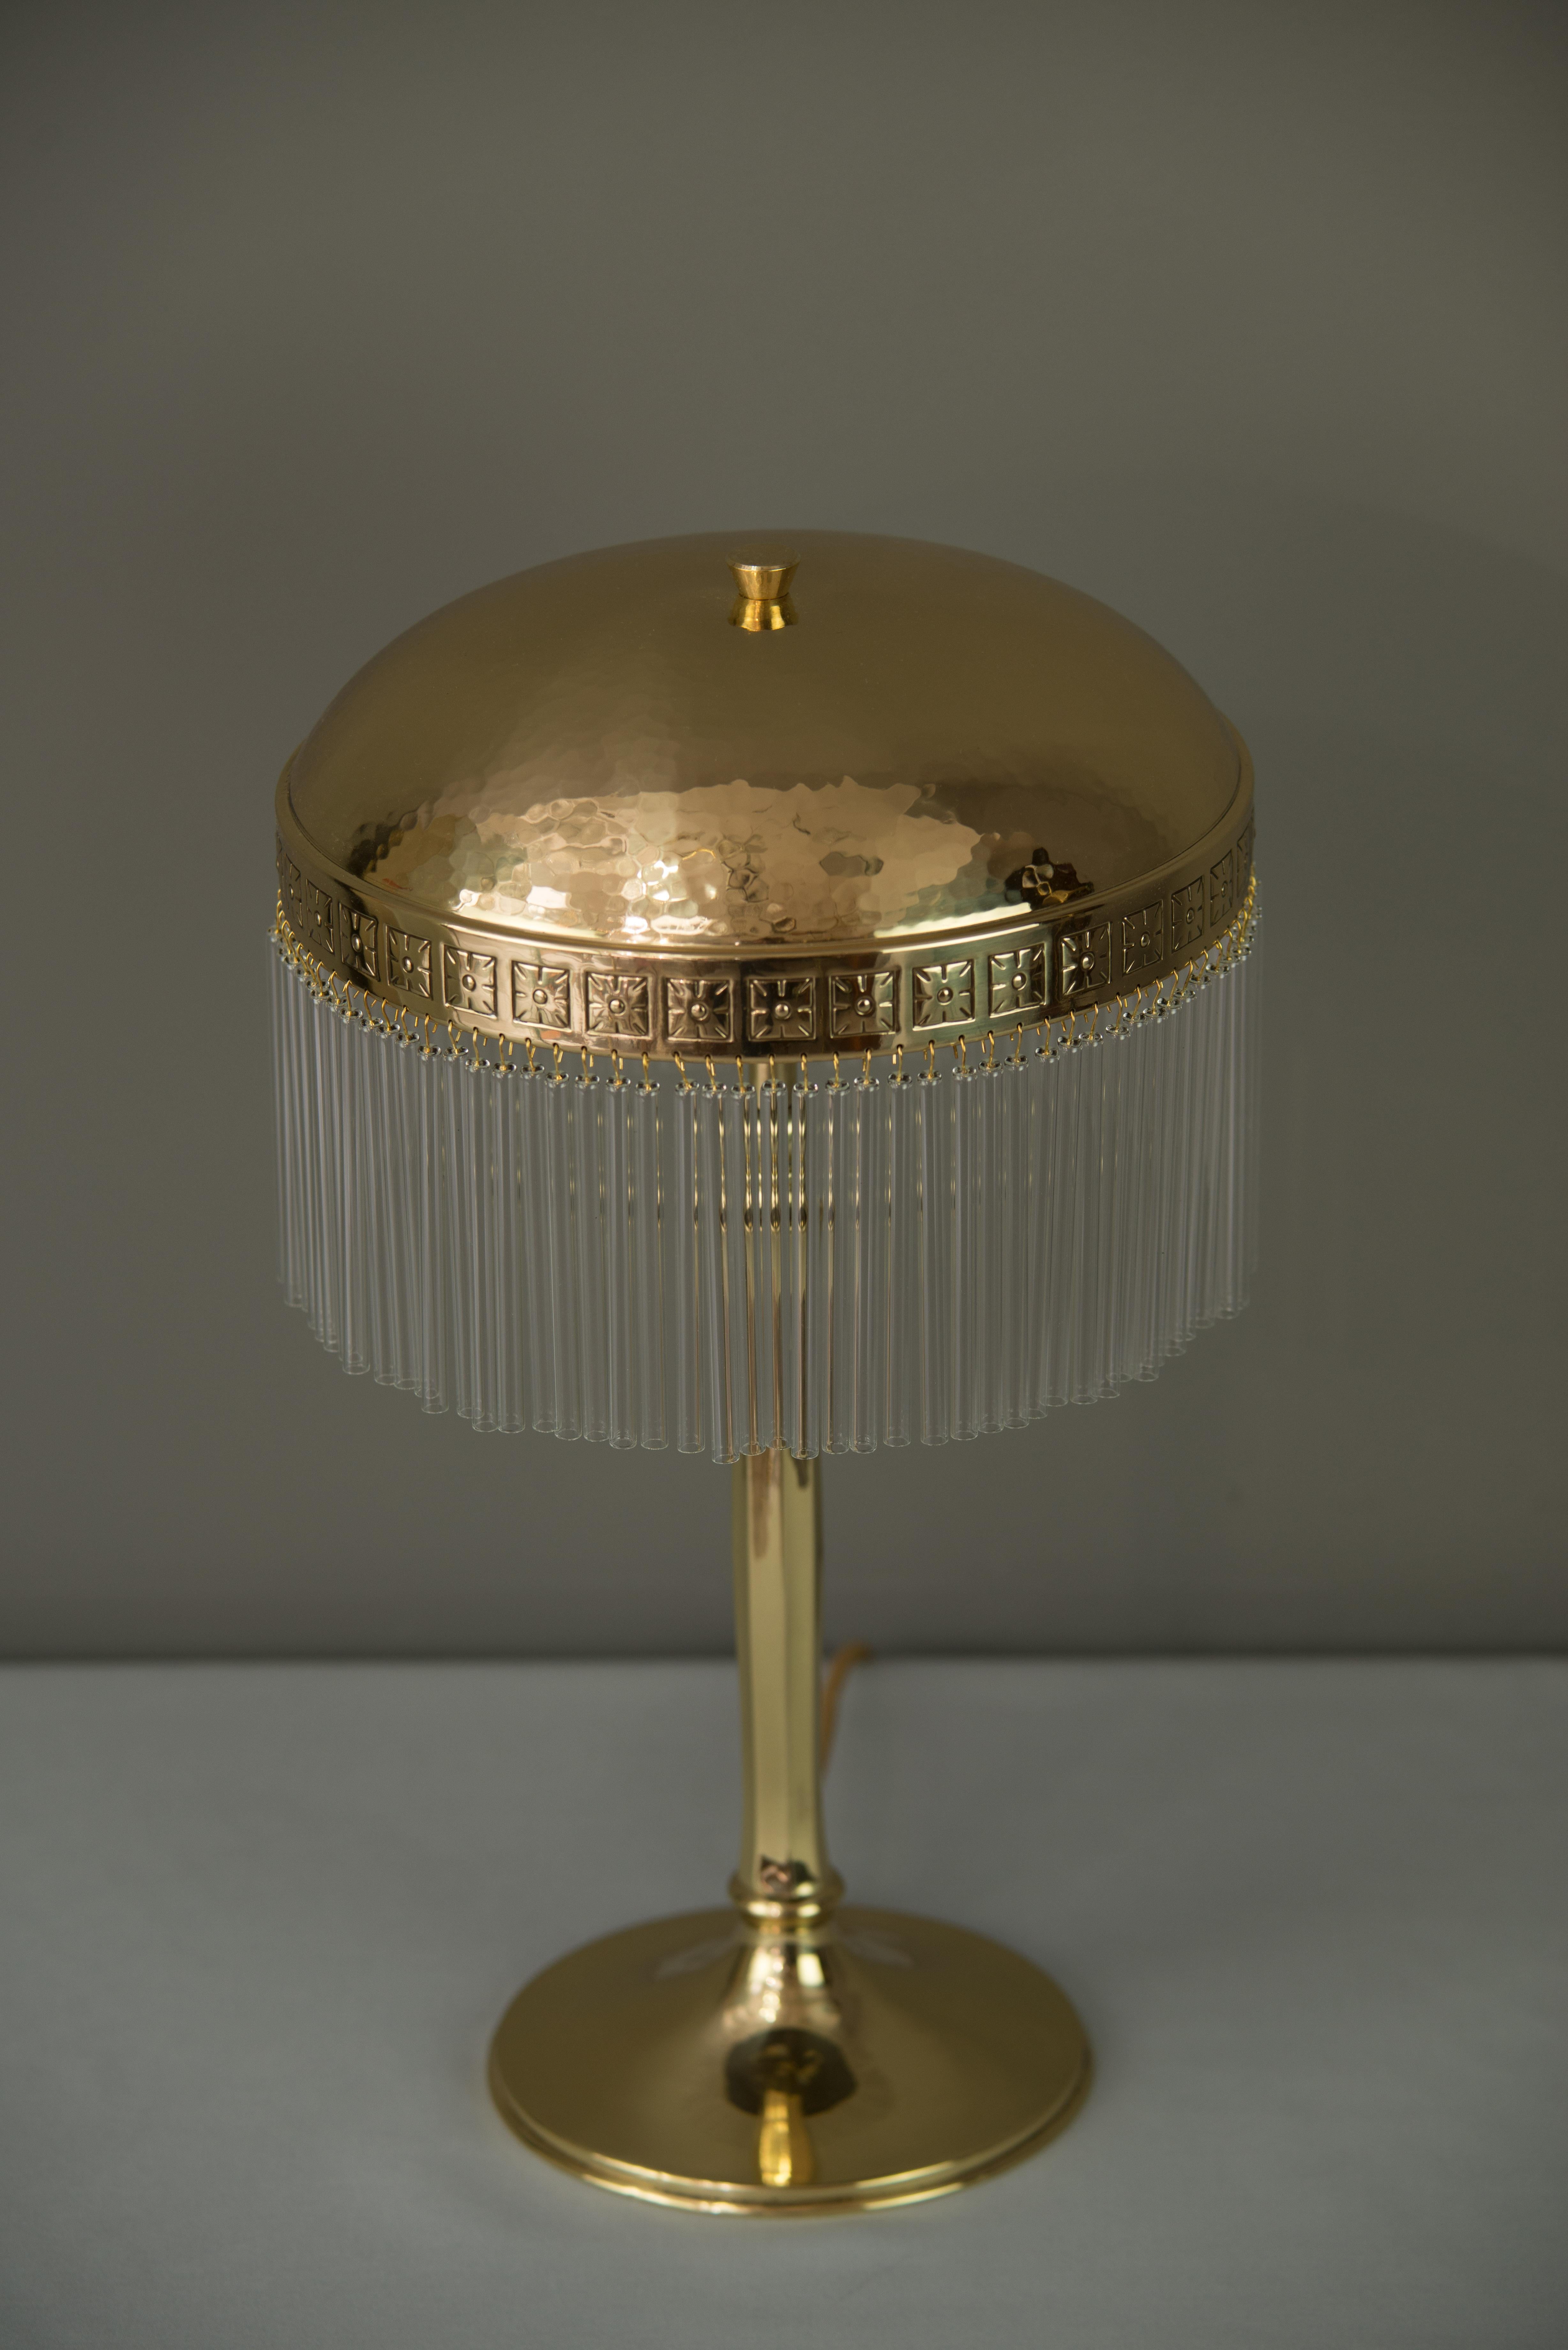 Austrian Hammered Jugendstil Table Lamp with Glass Sticks, circa 1910s